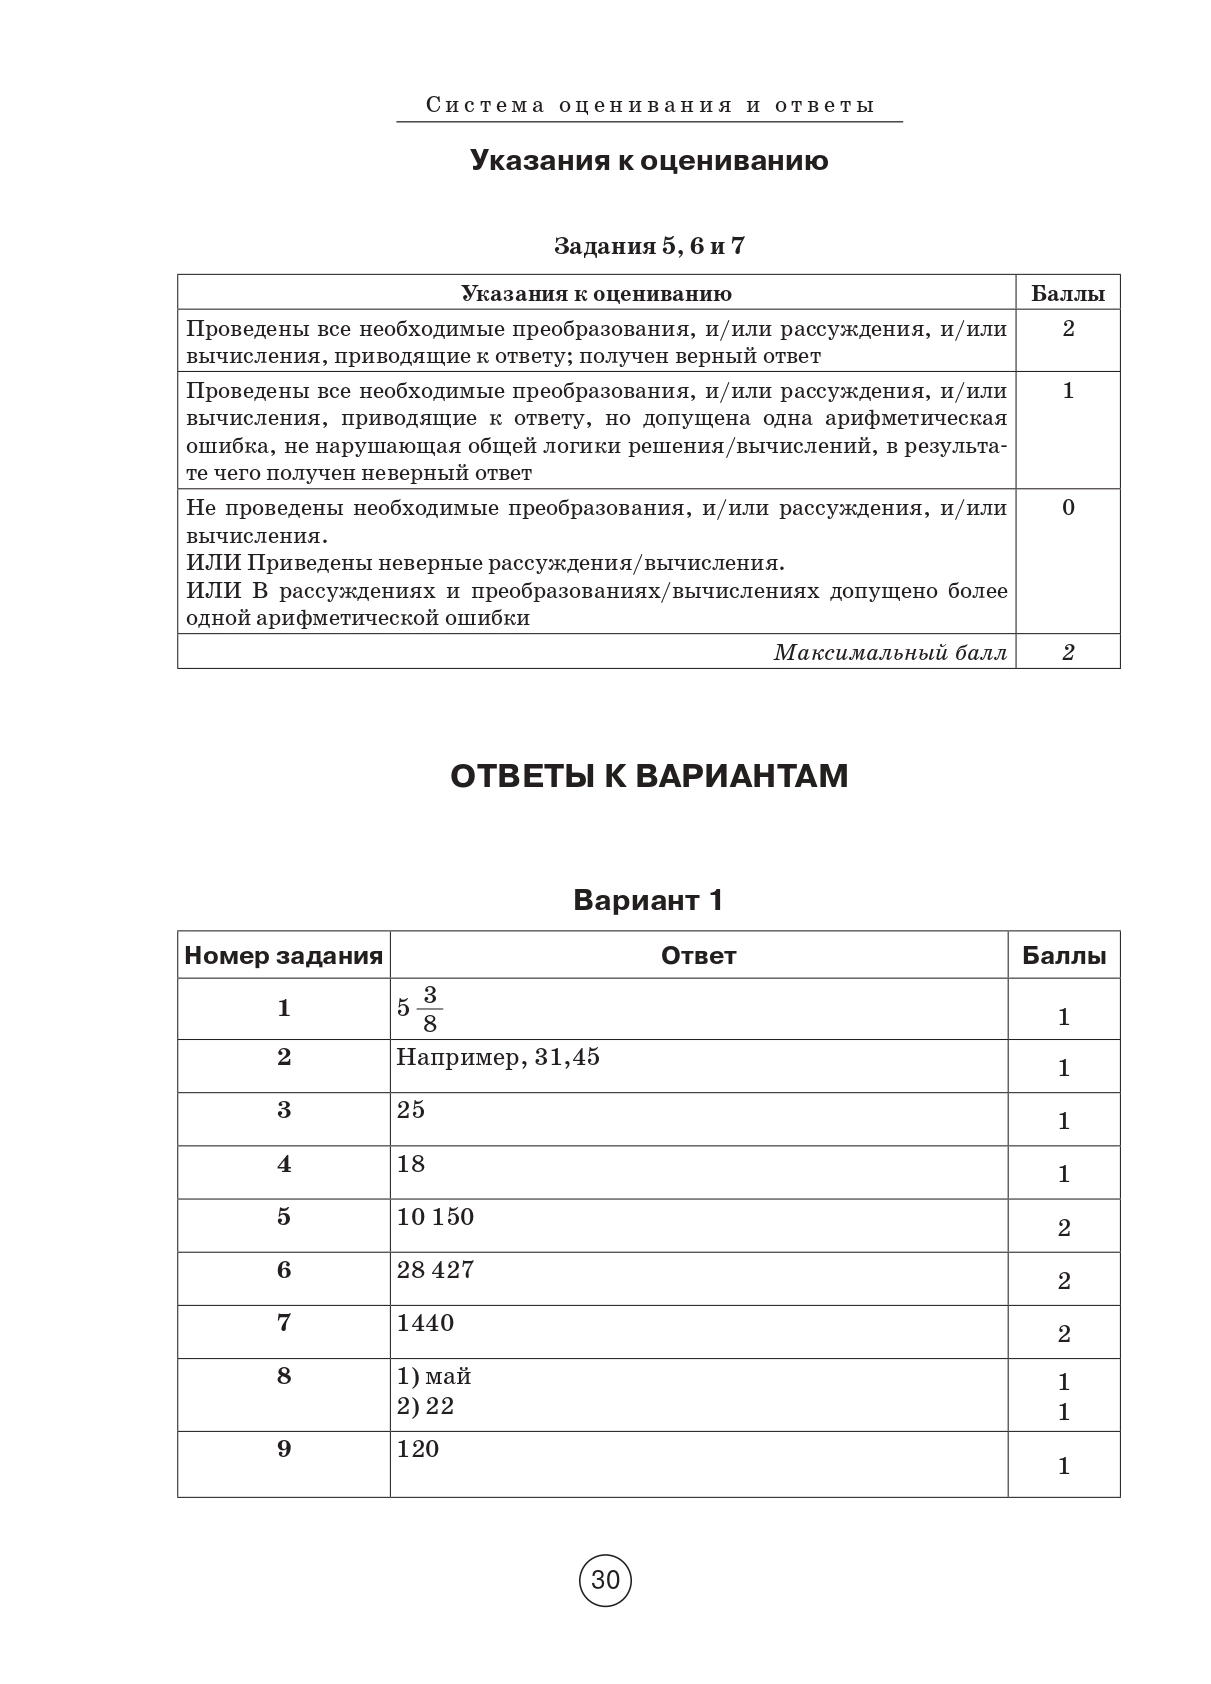 Математика. ВПР. 5-й класс. 10 тренировочных вариантов. Изд. 4-е.